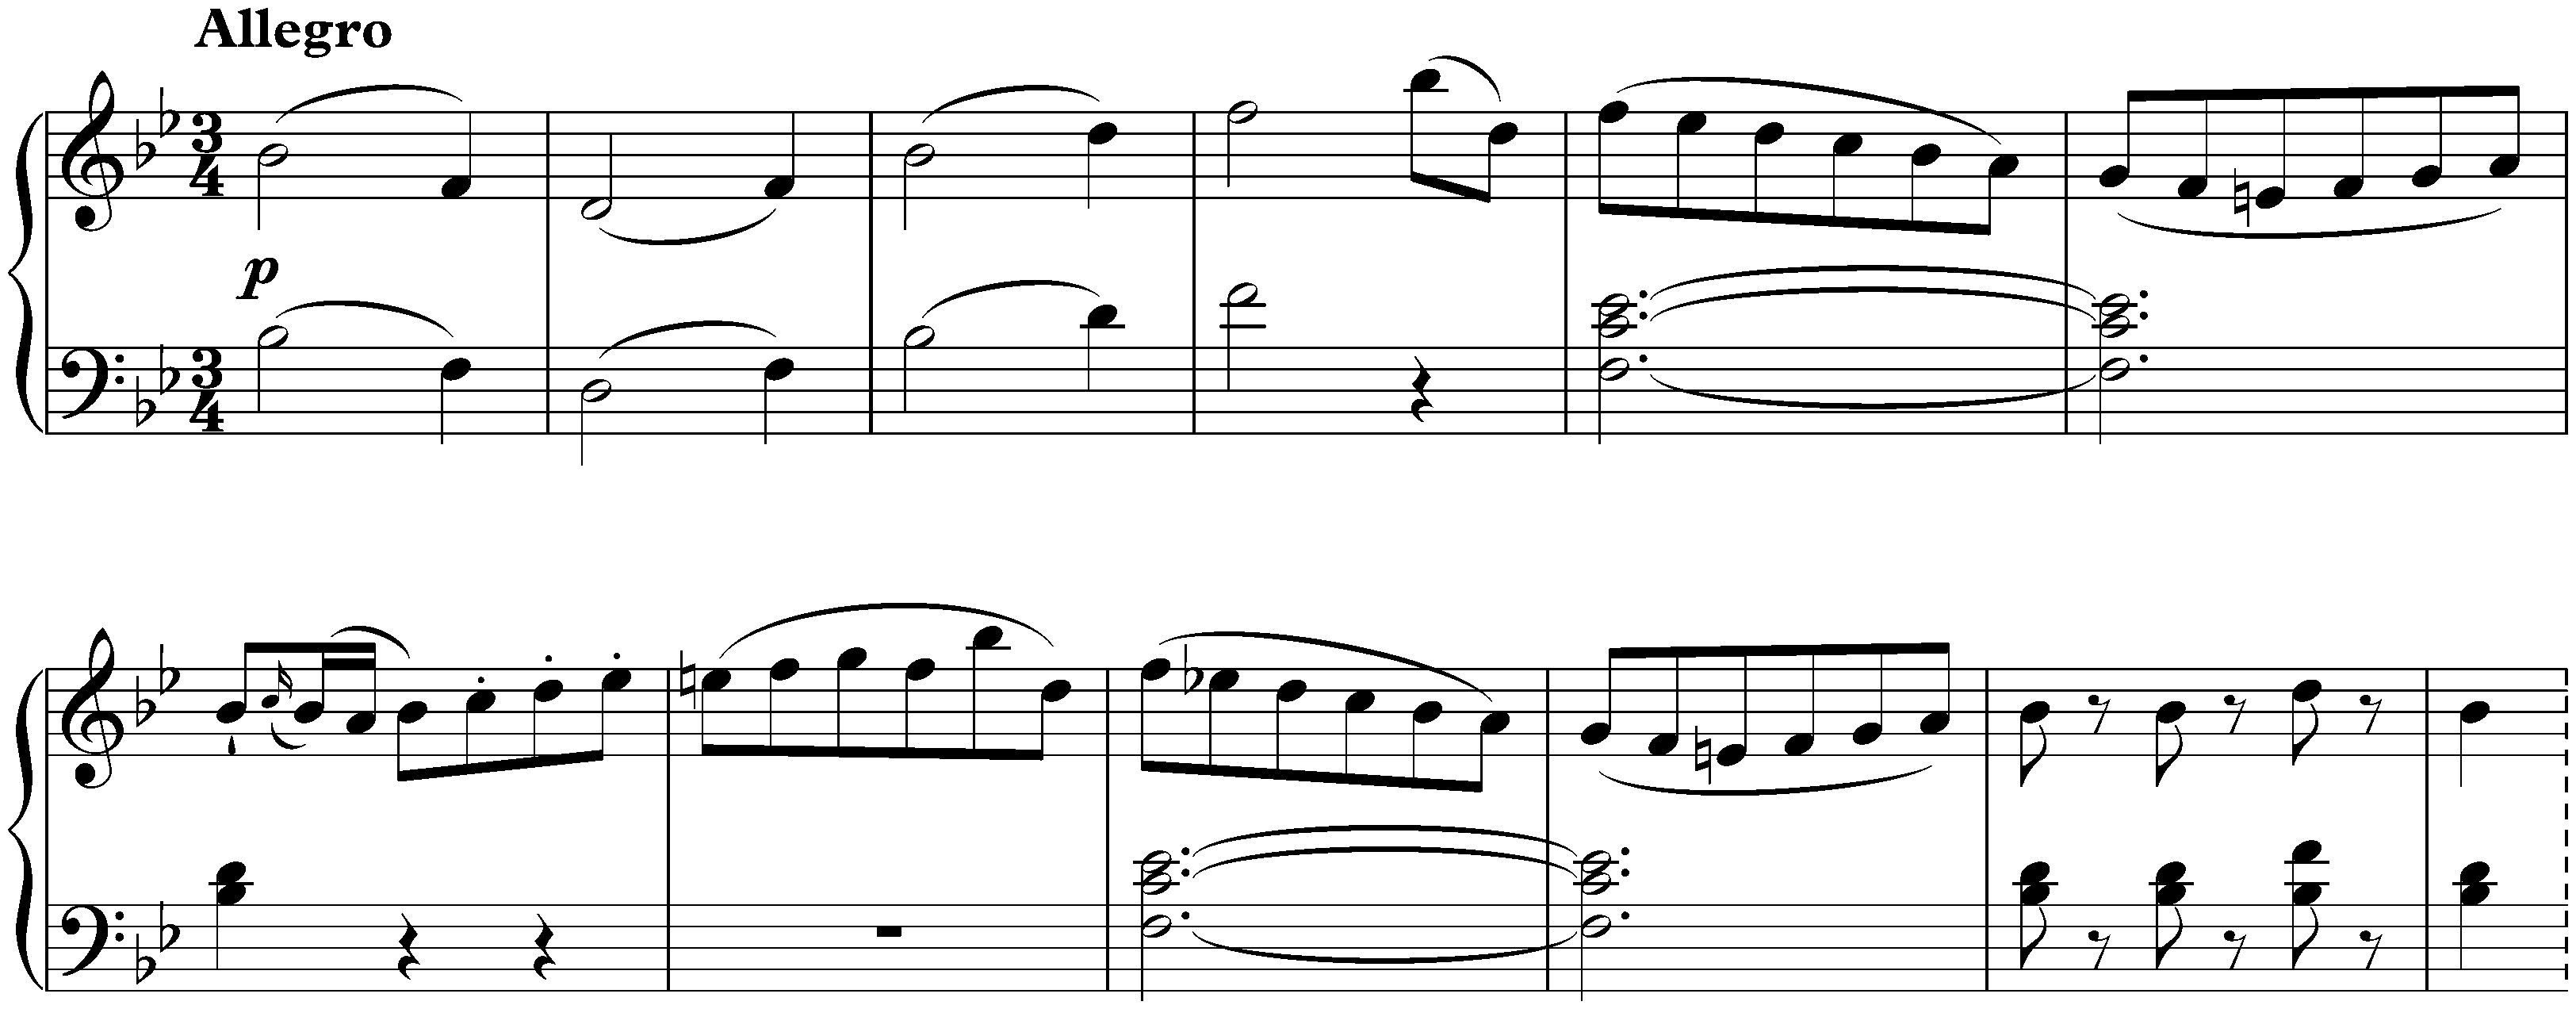 Sonata in B-flat major, KV 570; 1. Allegro